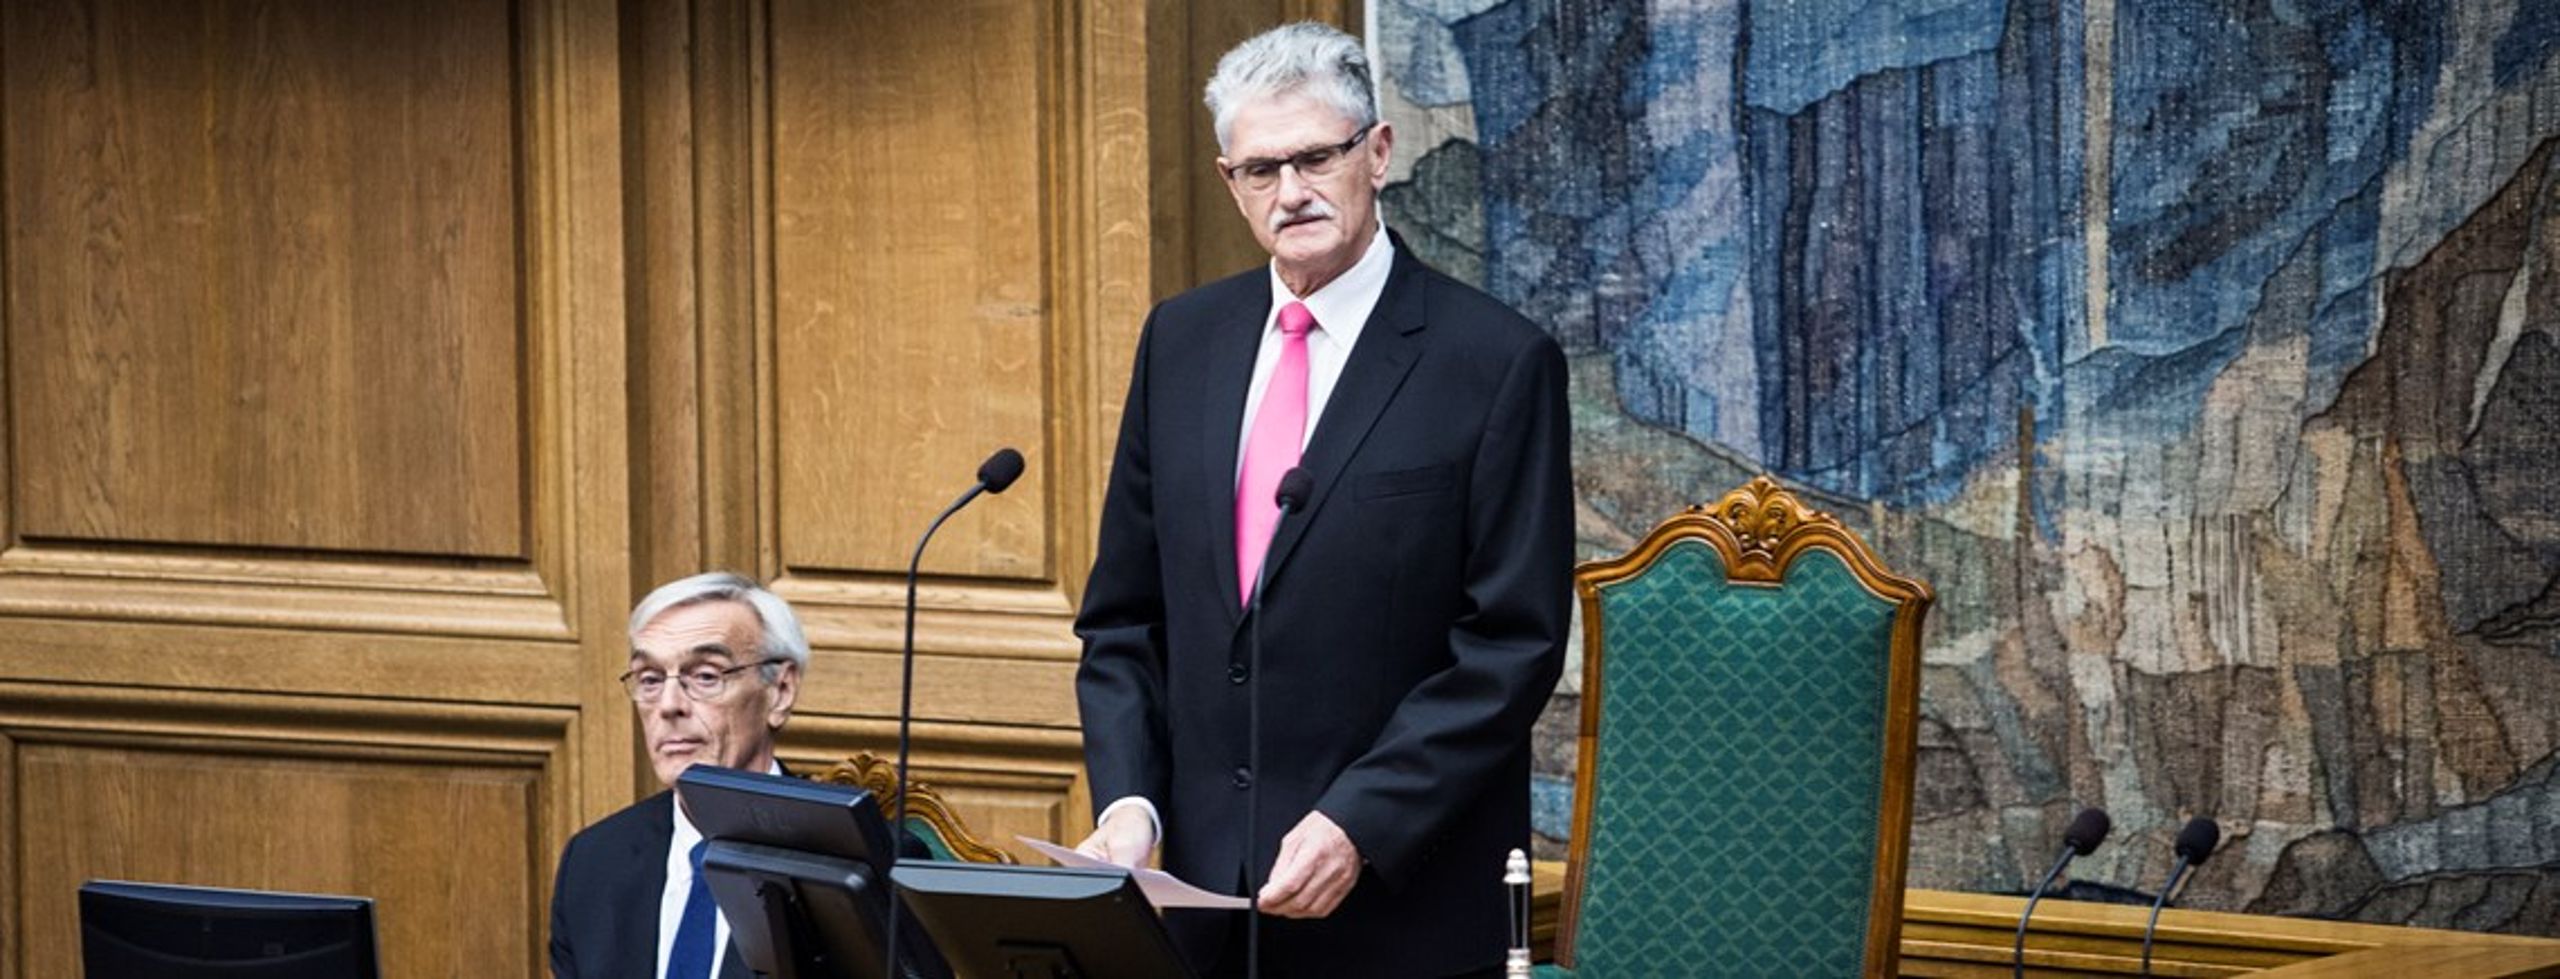 Mogens Lykketoft skifter i september 2015 formandsstolen i Folketinget ud med formandstolen i FN's Generalforsamling.